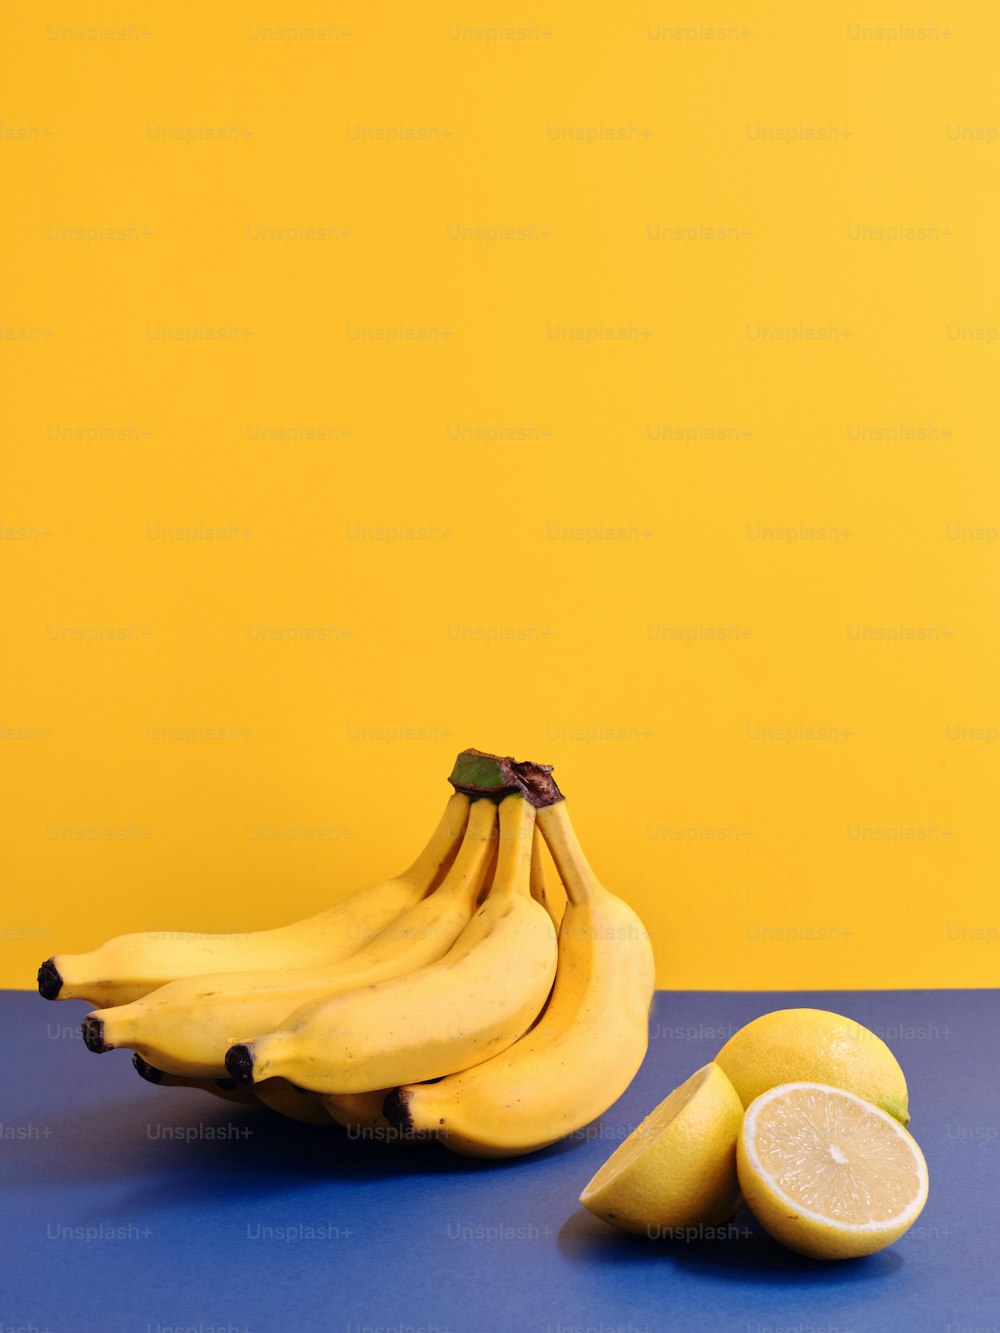 テーブルの上にバナナの束とレモンが2つ